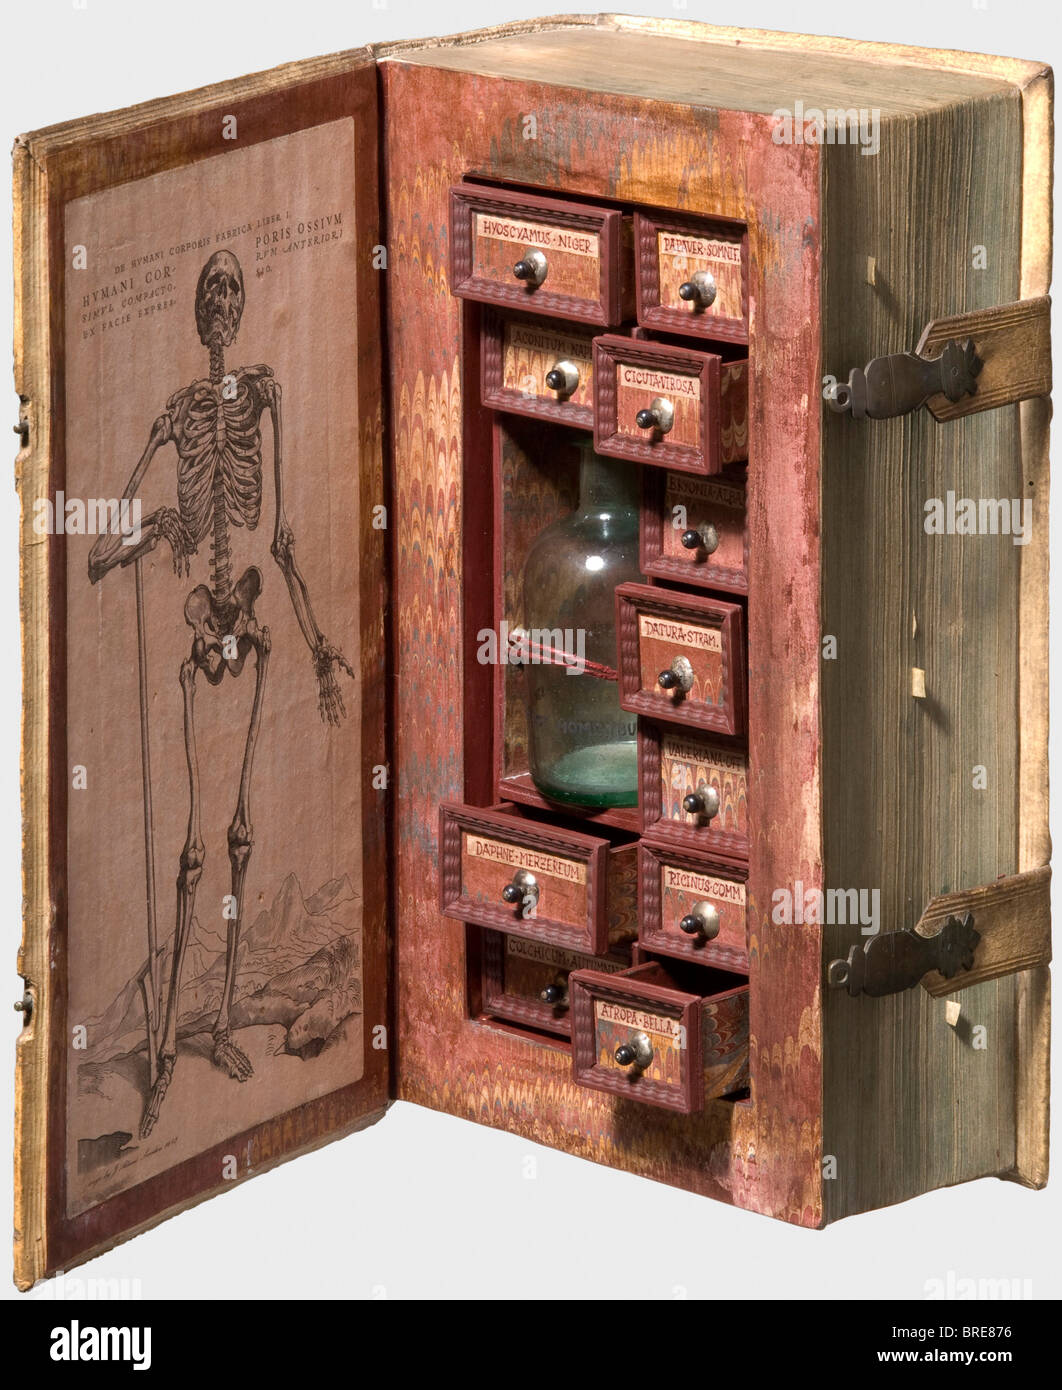 Un libro hueco usado como gabinete secreto del veneno, Historia, estilo del  siglo 17 Con la cubierta original, finamente realzada del pergamino.  Cierres de libro intactos, las páginas pegadas a una pieza